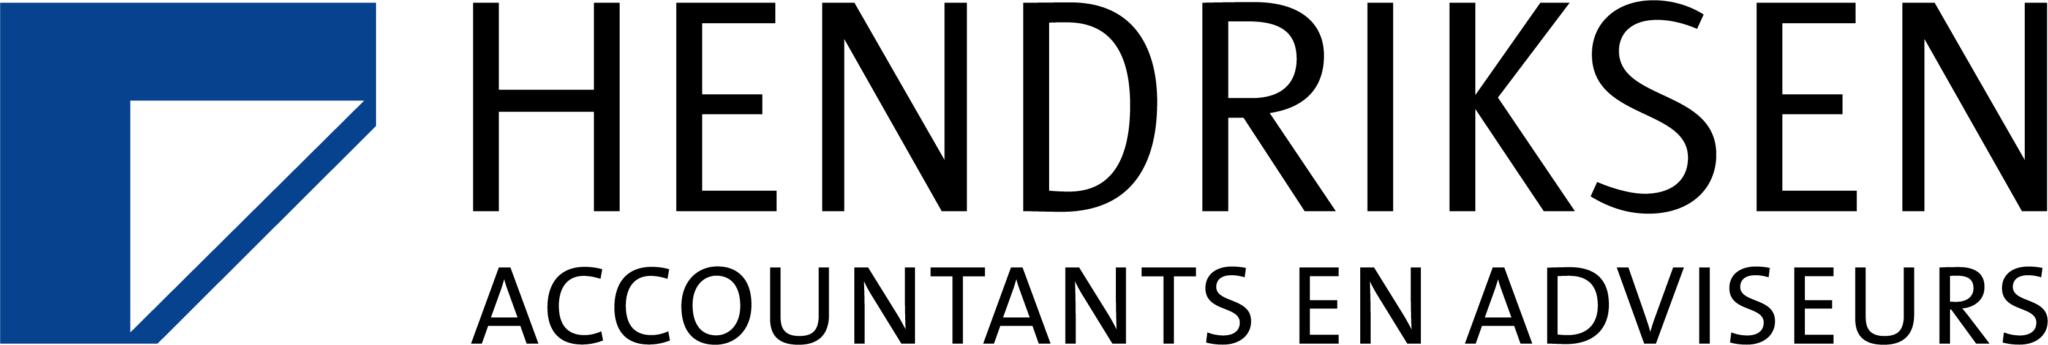 Het logo van Hendriksen Accountants en Adviseurs.